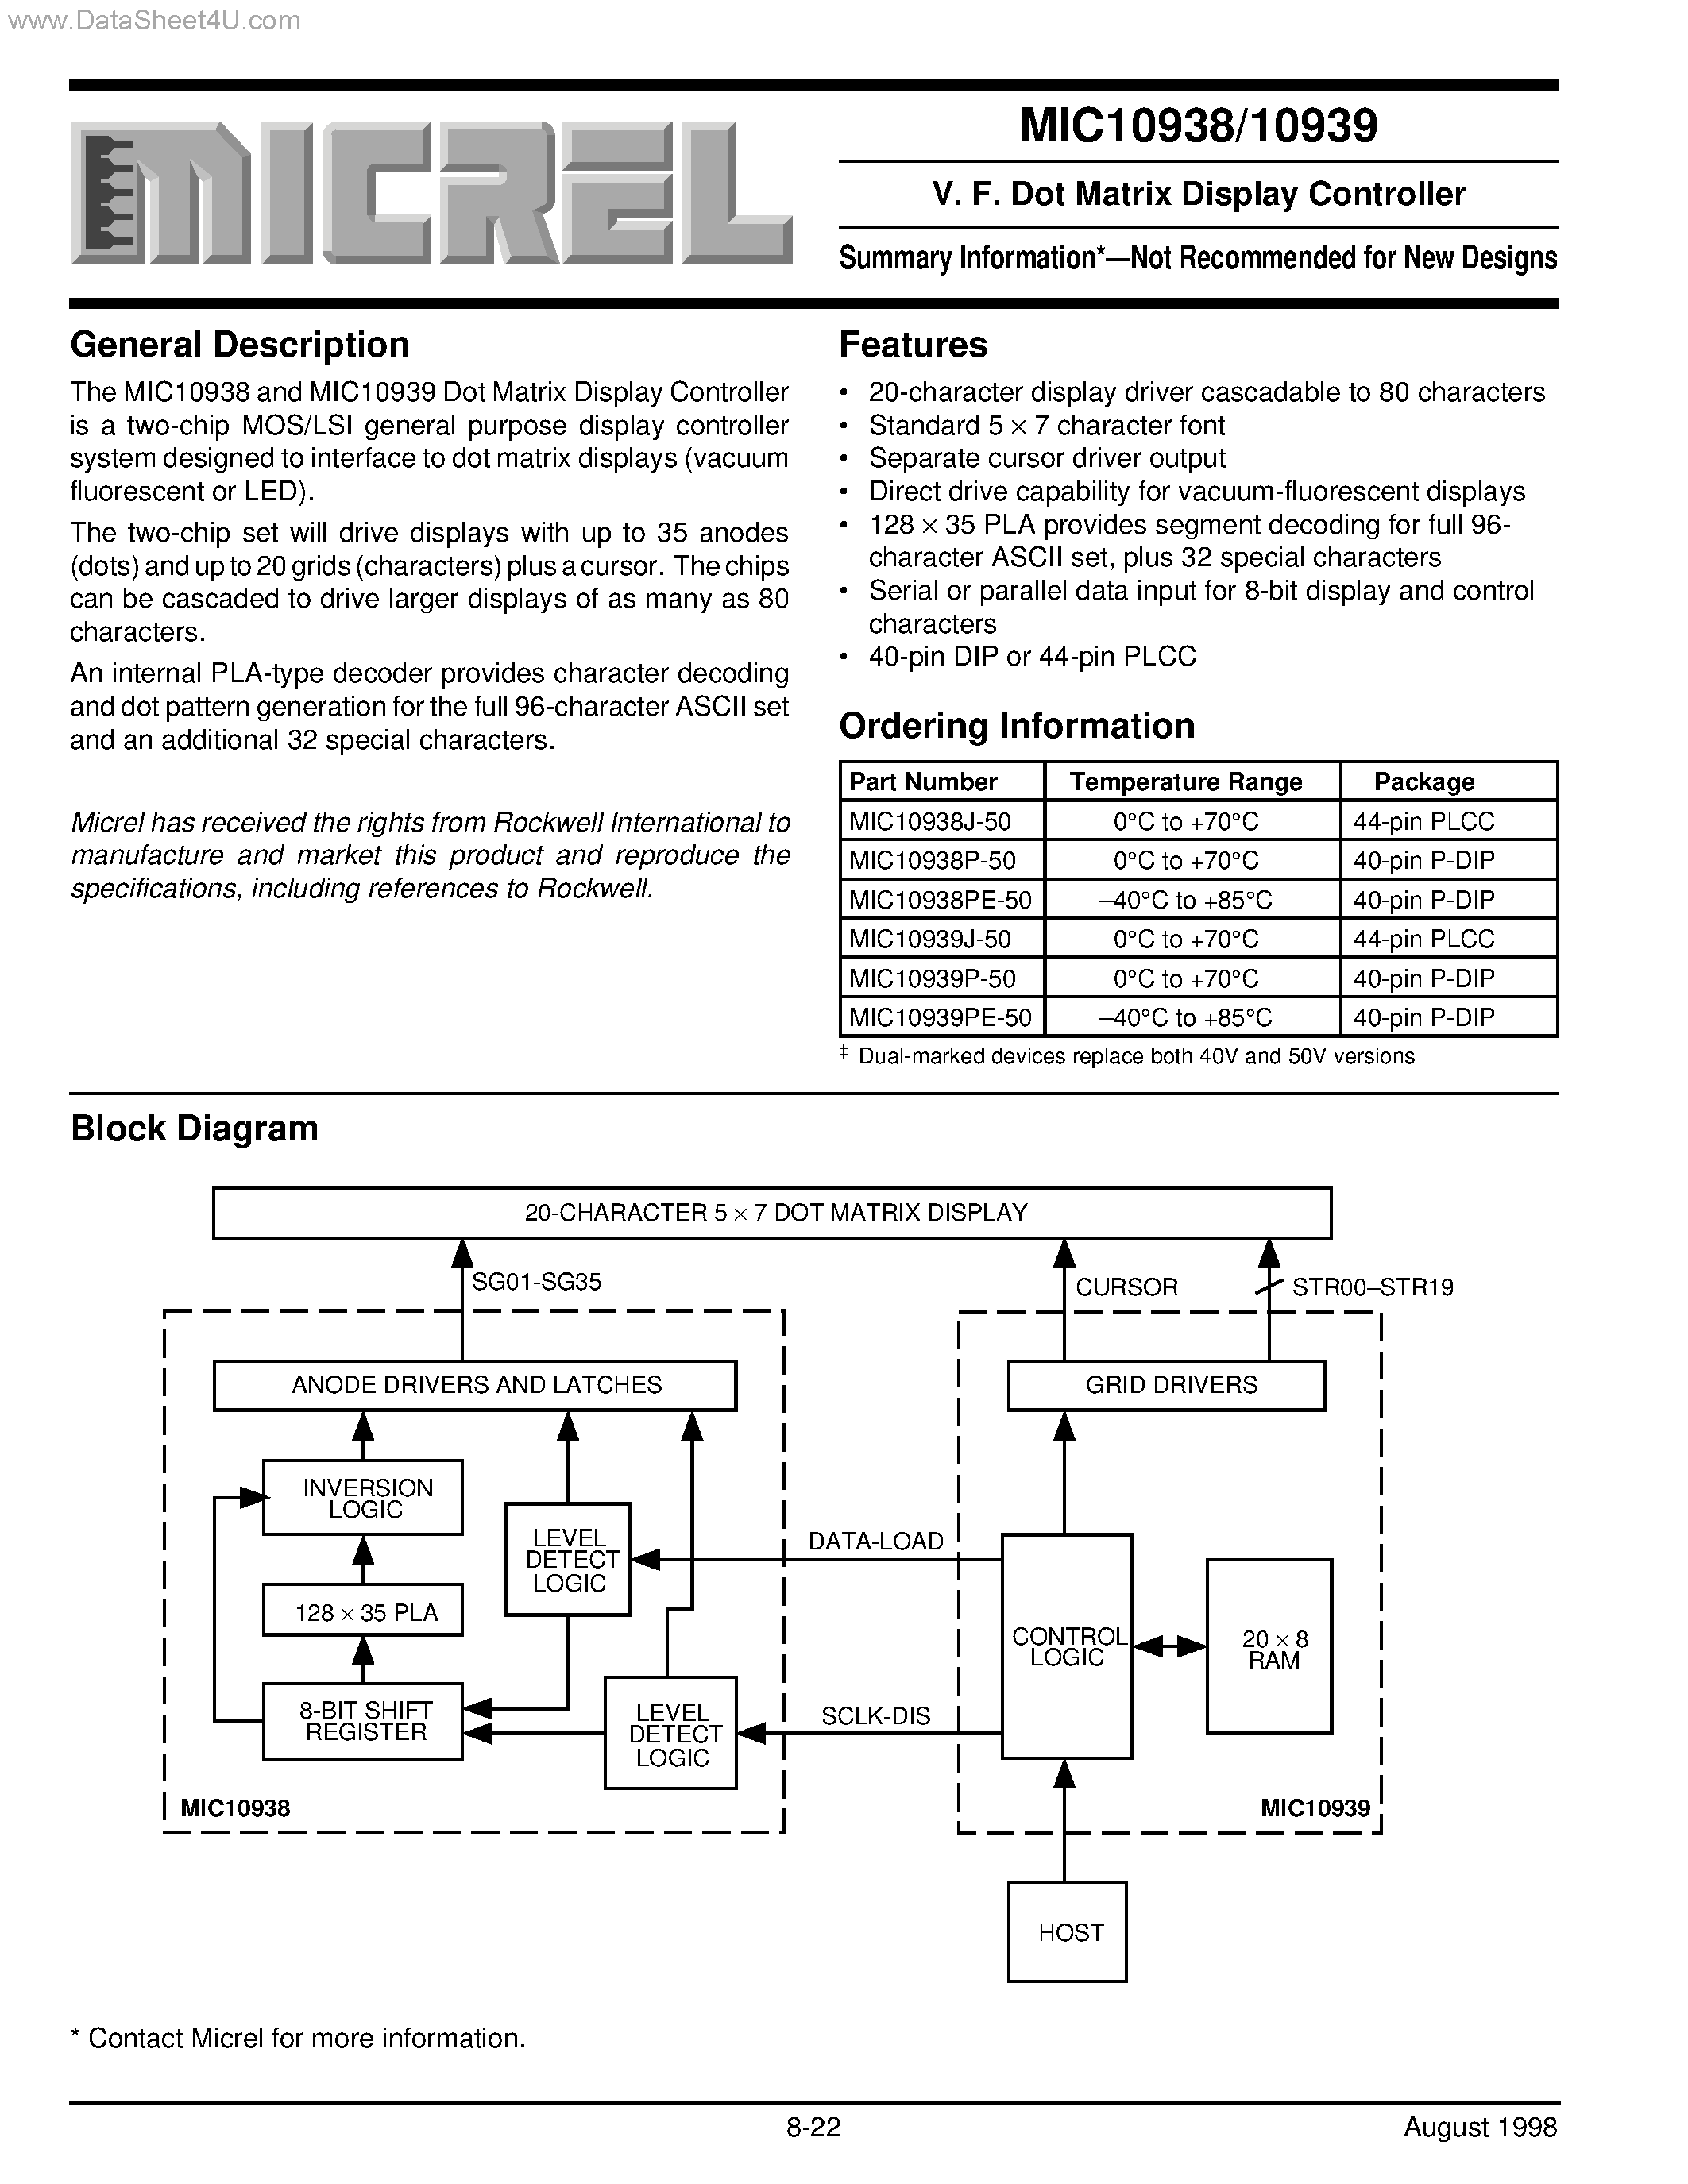 Даташит MIC10938 - (MIC10938 / MIC10939) V. F. Dot Matrix Display Controller страница 1